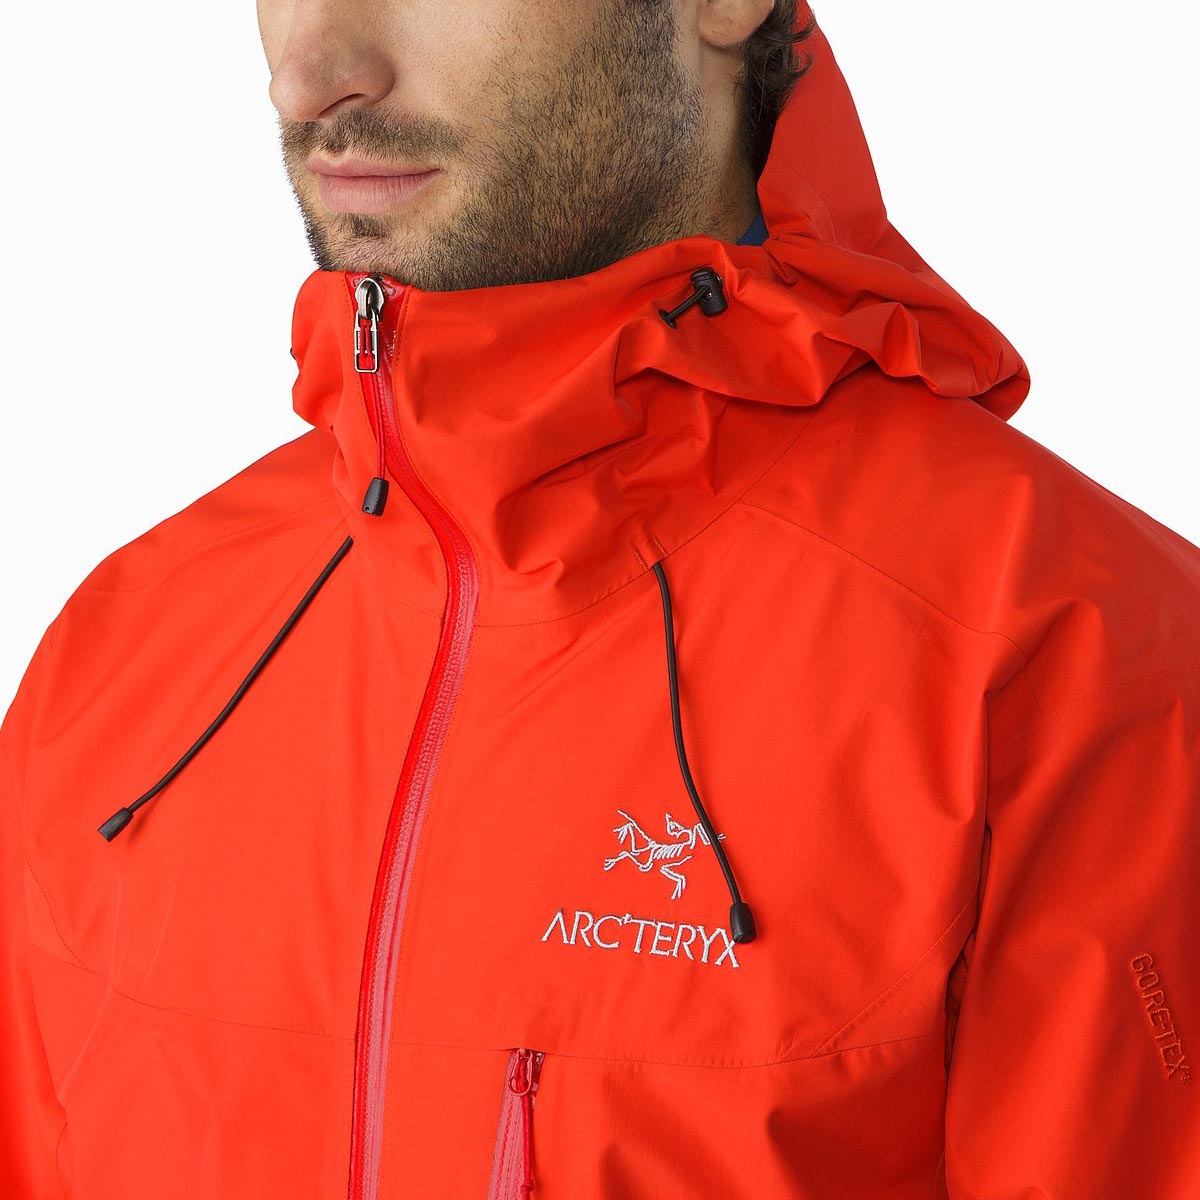 Arc'teryx Alpha SL Jacket, men's, discontinued Fall 2017 colors